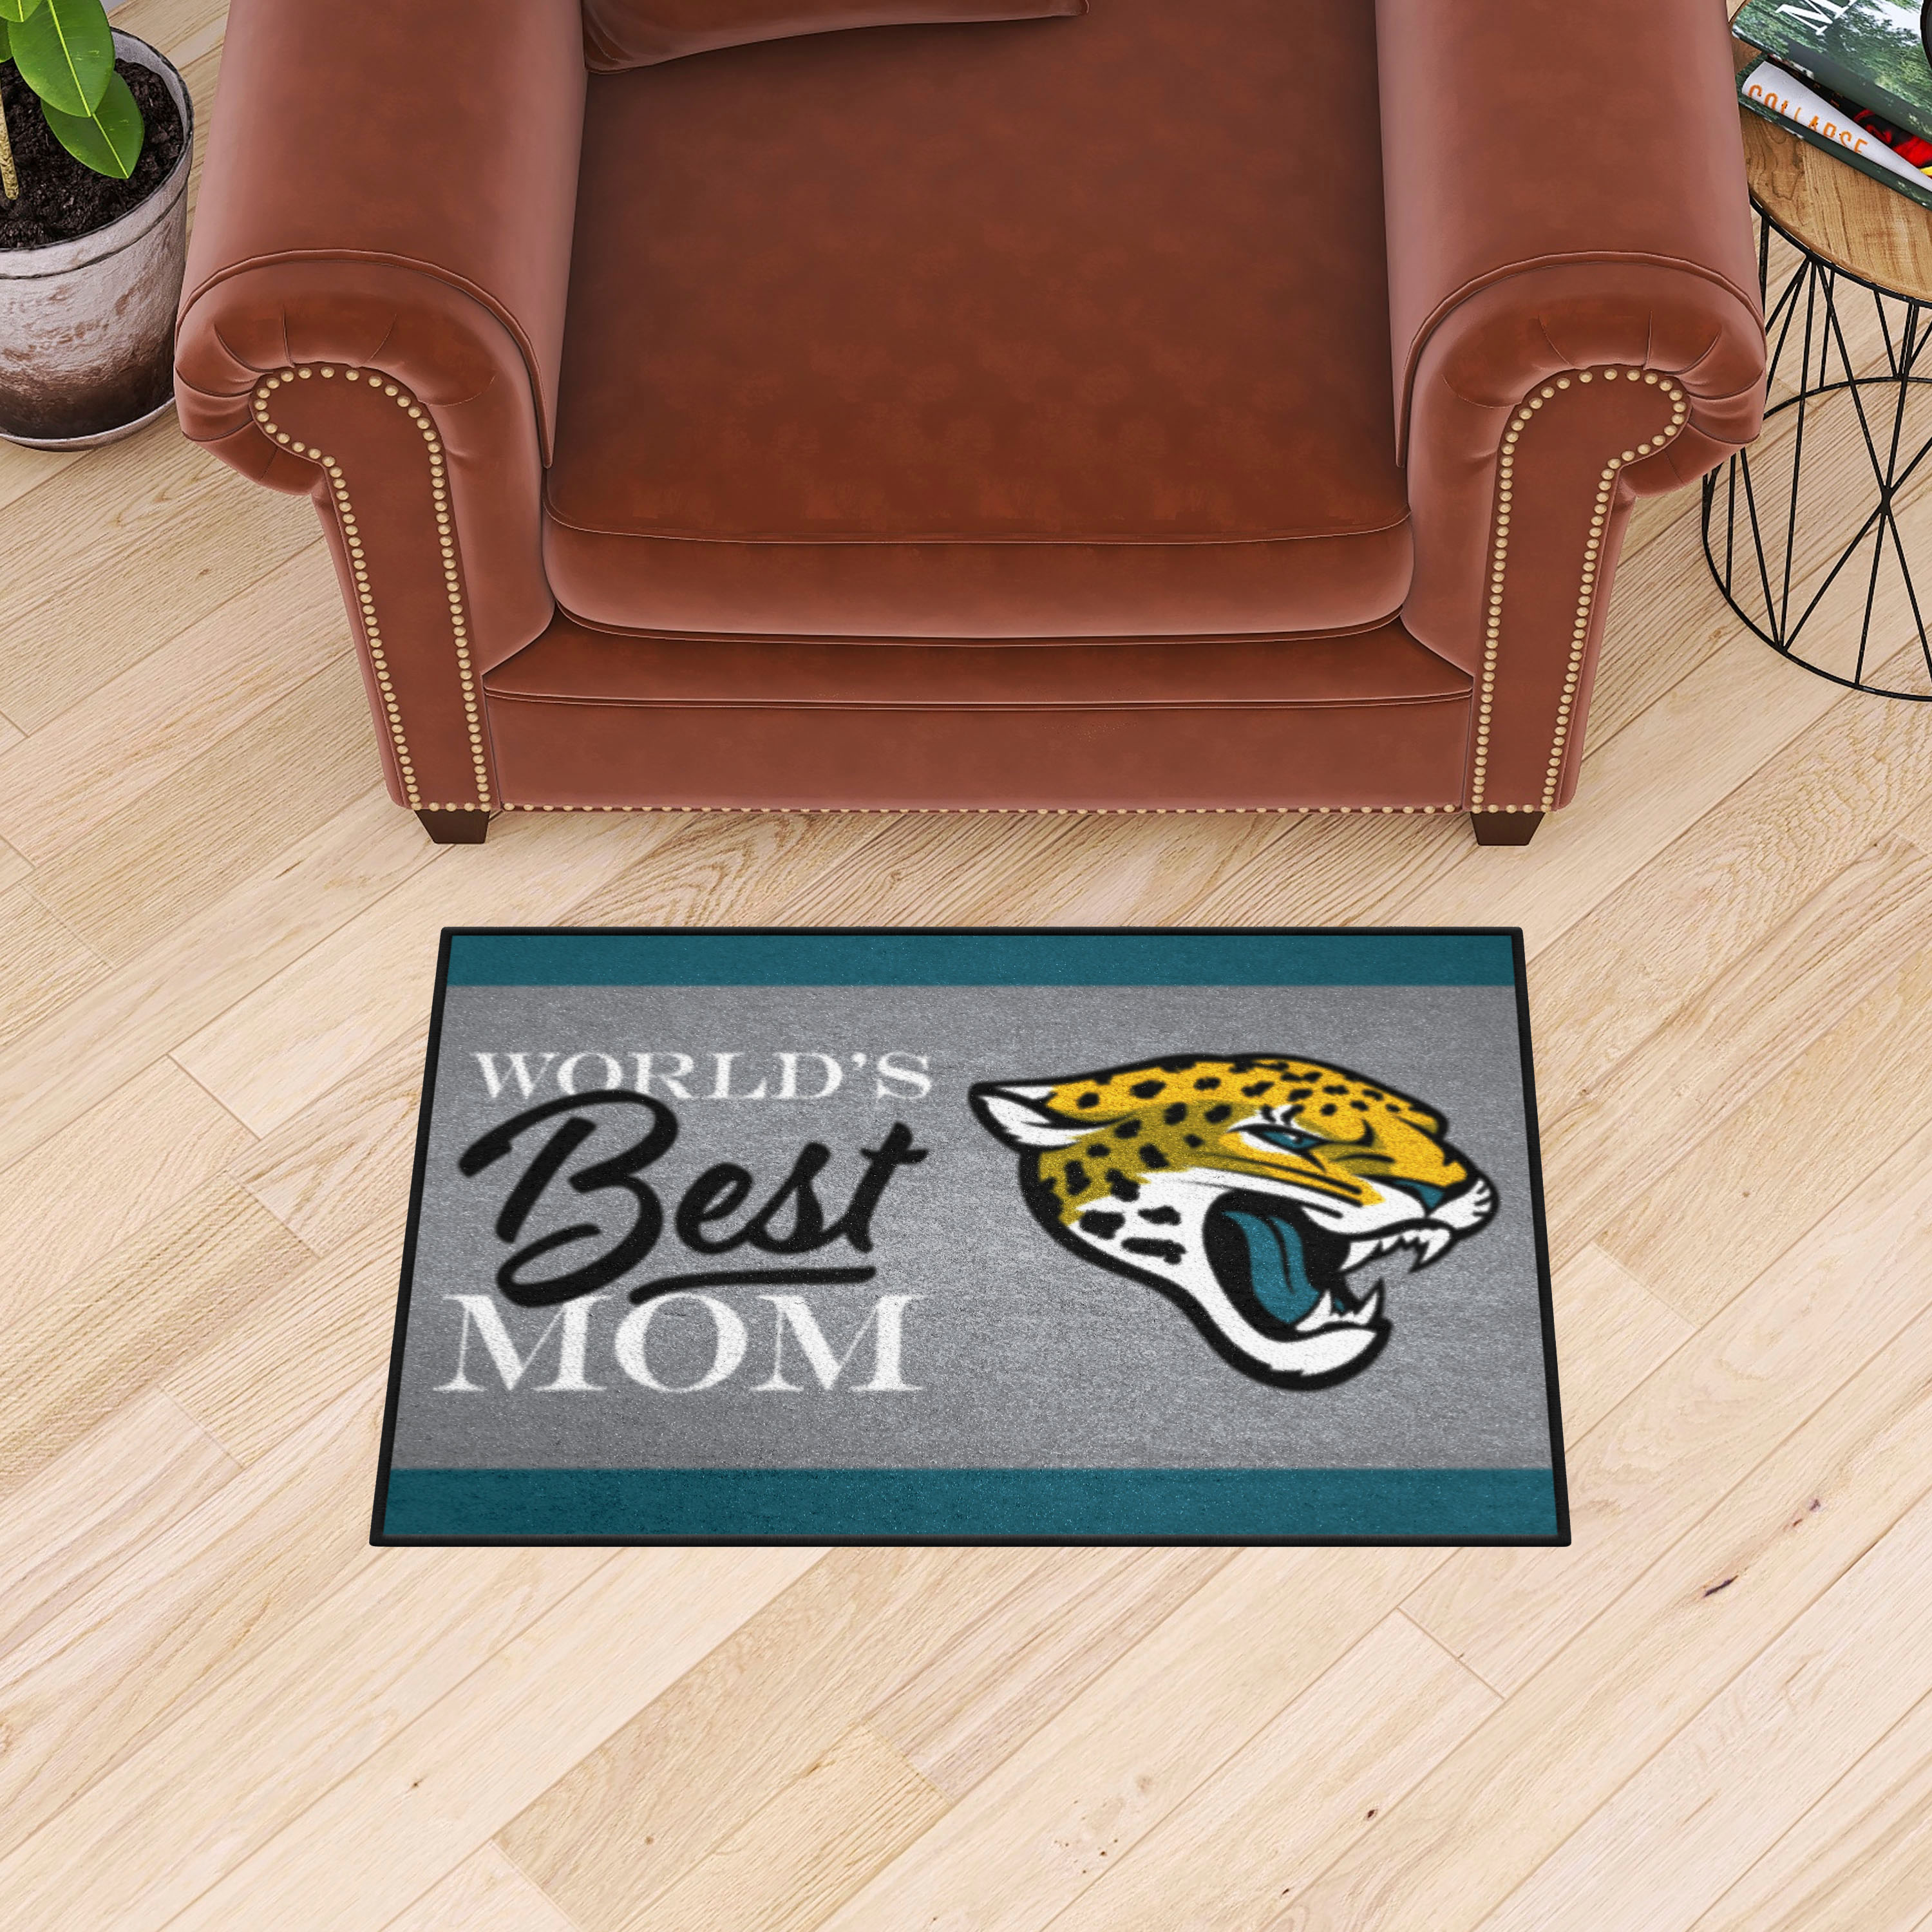 Jacksonville Jaguars Worldâ€™s Best Mom Starter Doormat - 19 x 30